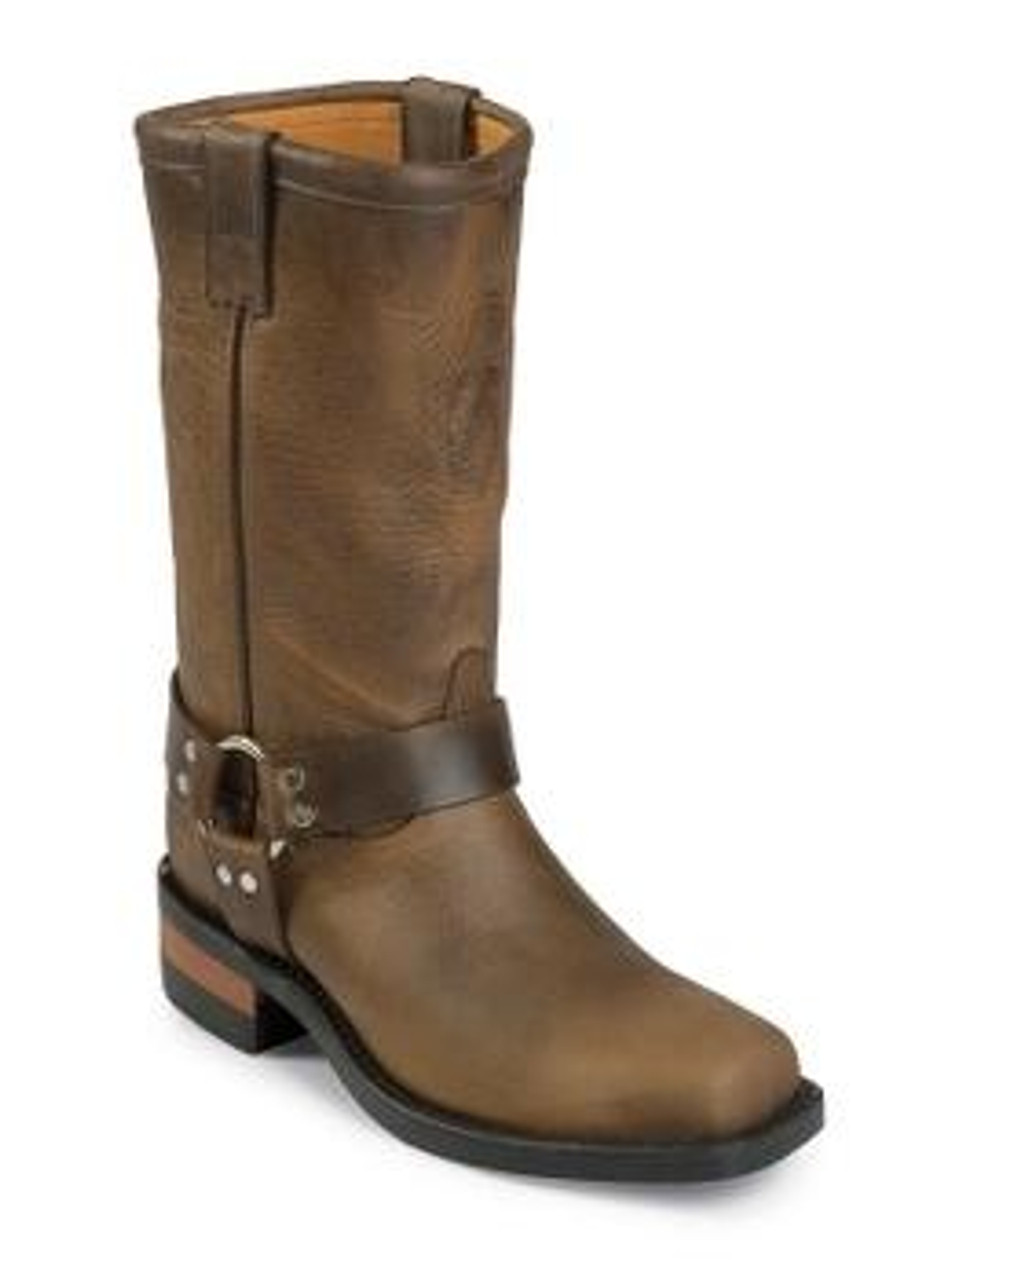 chippewa harness boots 97868